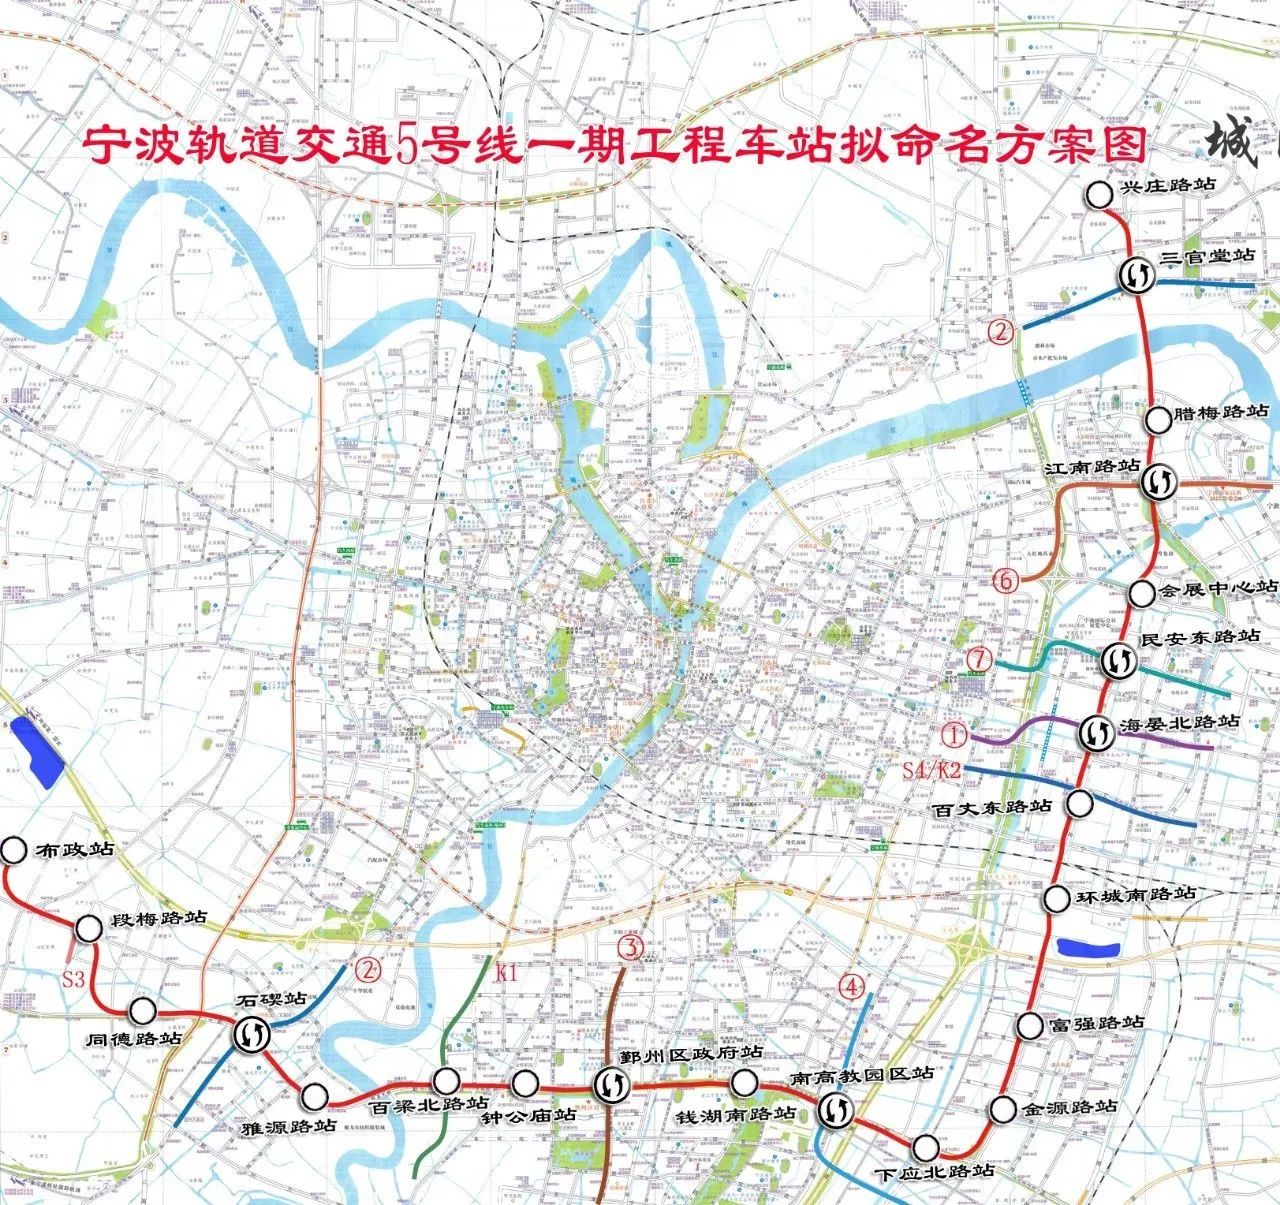 地铁5号线一期,宁波至奉化城际铁路车站拟命名方案出炉!